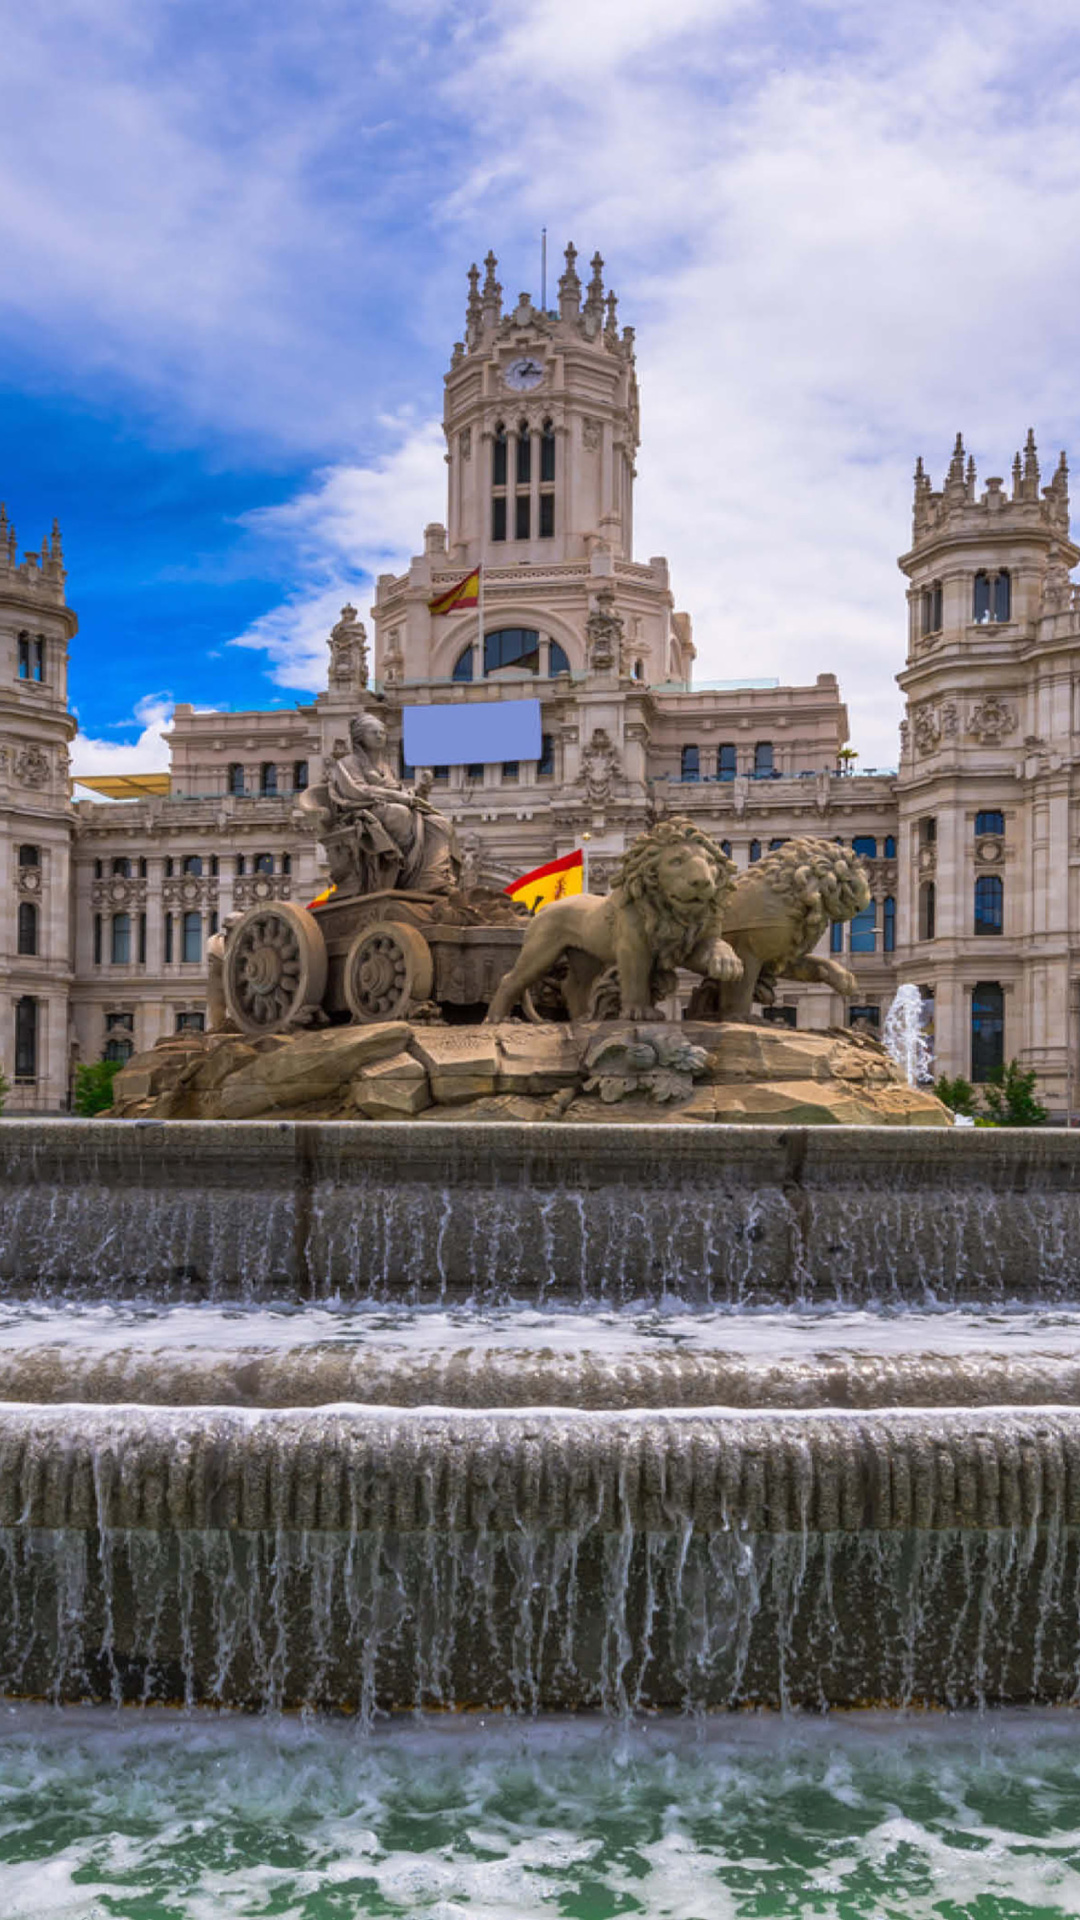 Обои Plaza de Cibeles in Madrid 1080x1920